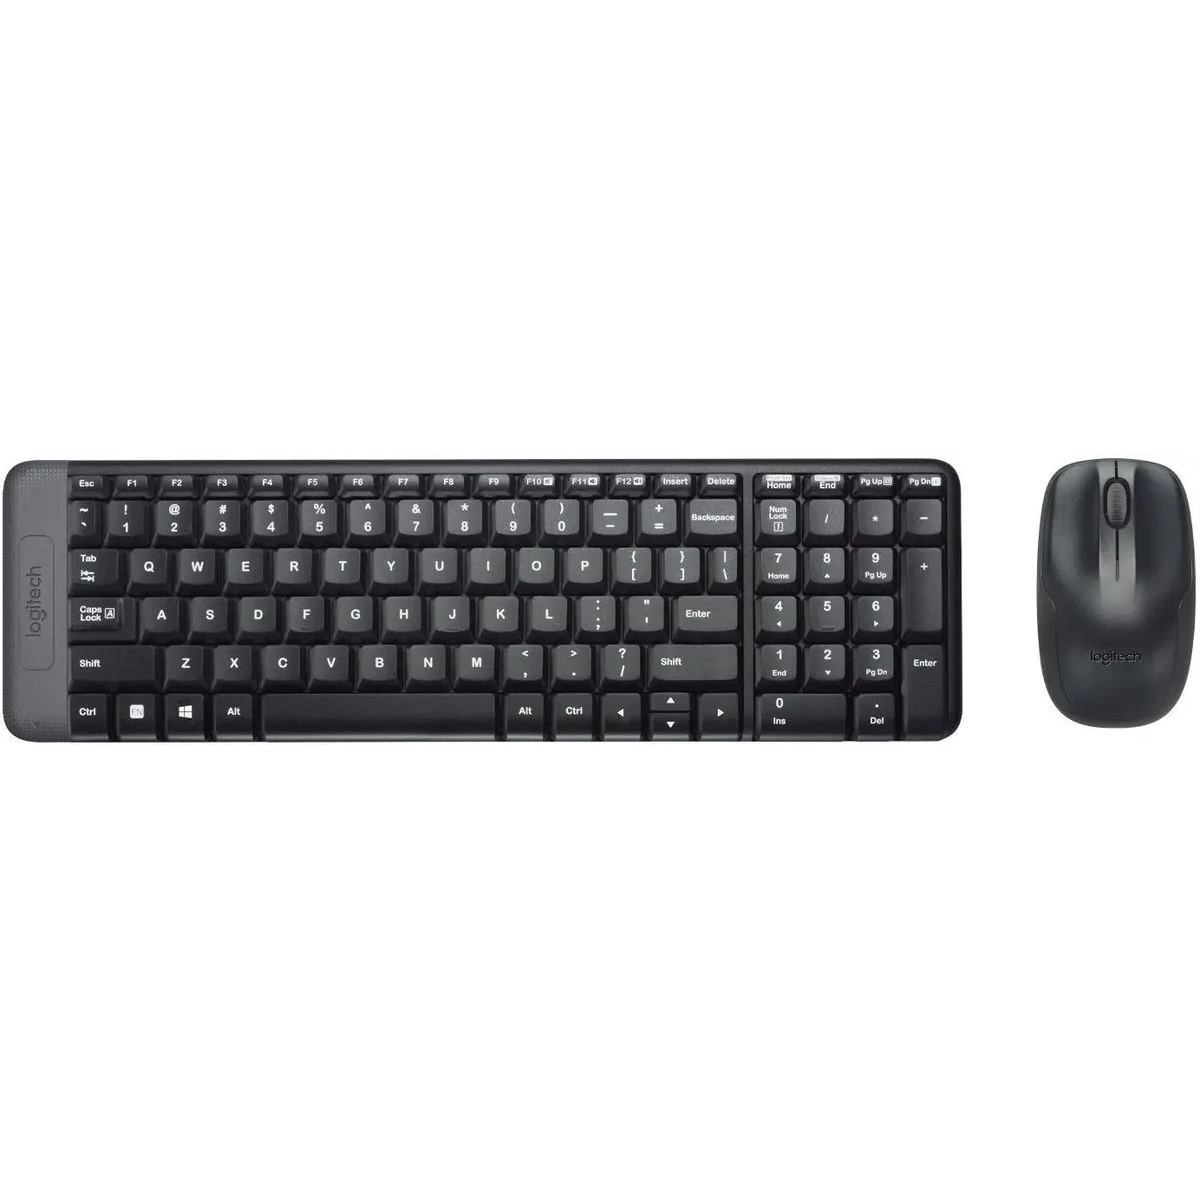 Фото — Комплект (клавиатура и мышь) Logitech MK220, USB, беспроводной, черный